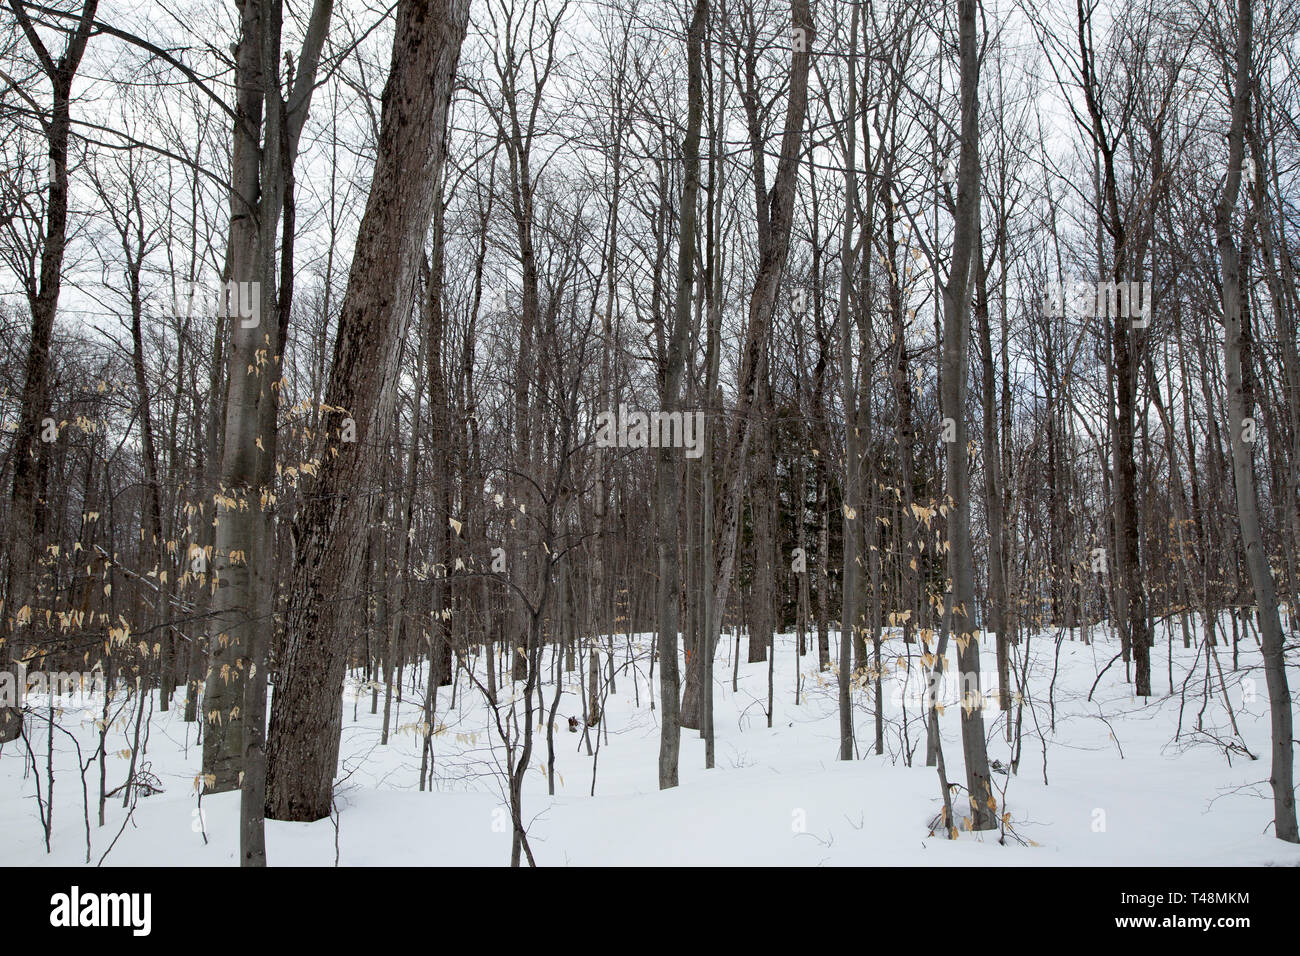 Forêt qui entoure un chemin de campagne à Seguin, comté de Muskoka, Ontario, en hiver avec de la neige au sol. Banque D'Images